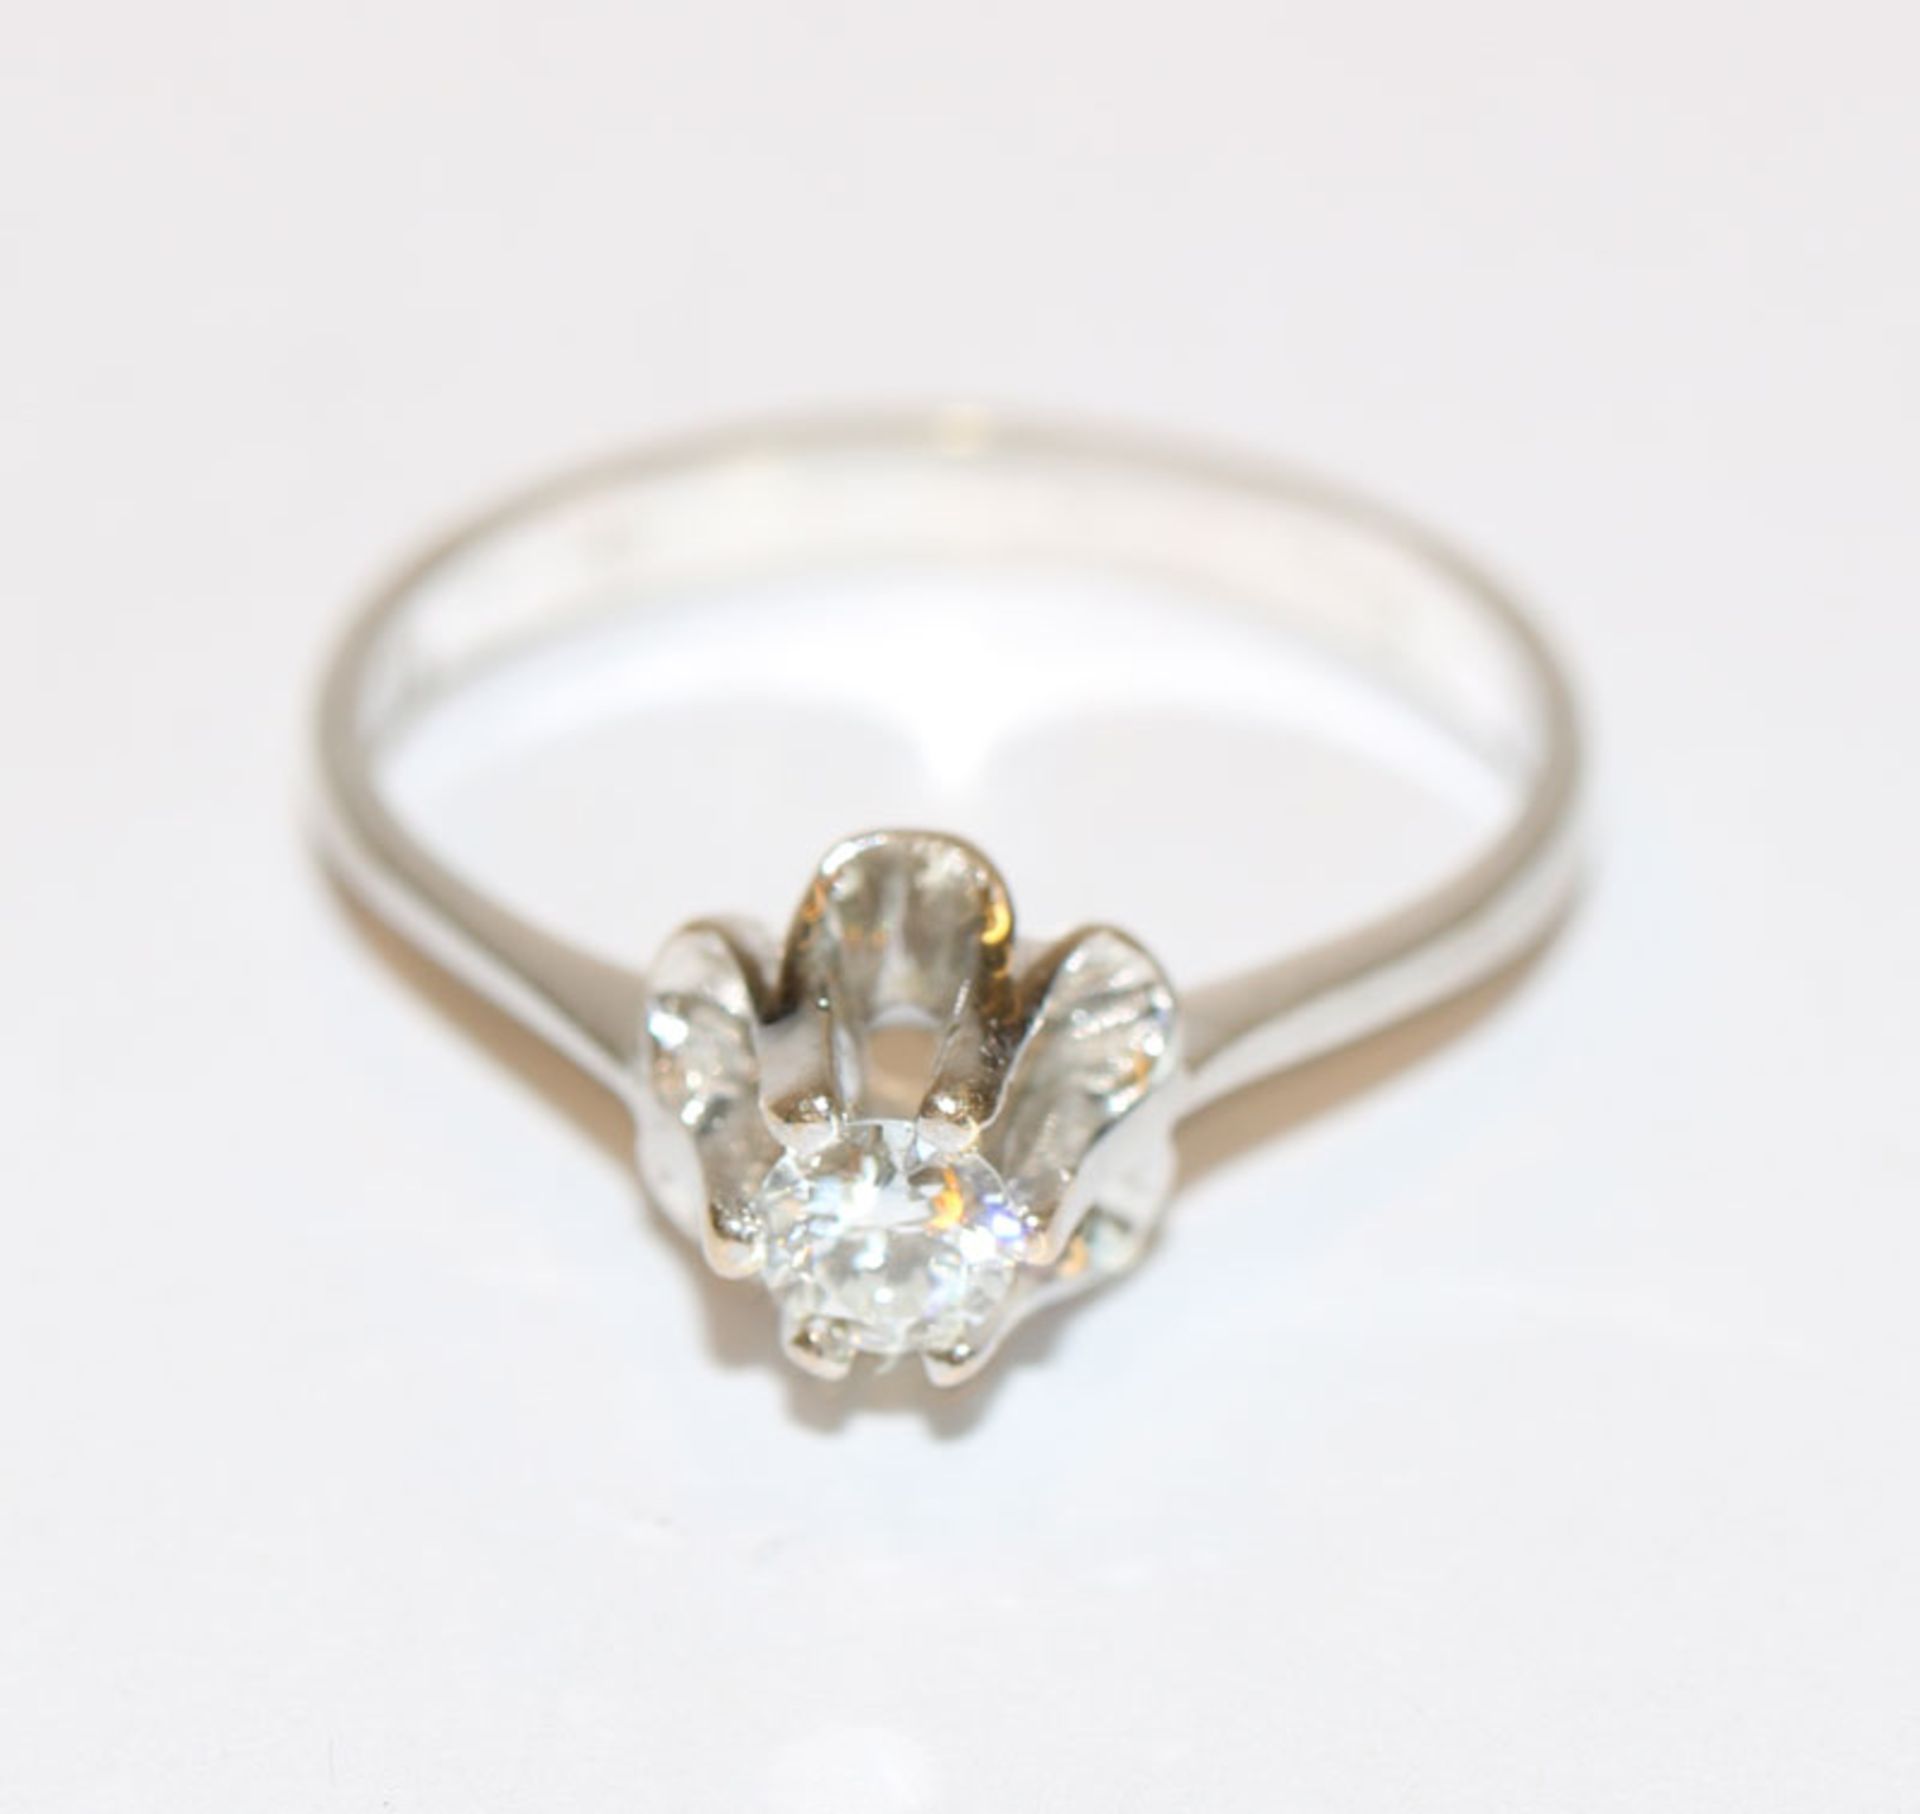 14 k Weißgold Ring mit Diamant, ca. 0,22 ct,, Gr. 57, klassische Handarbeit